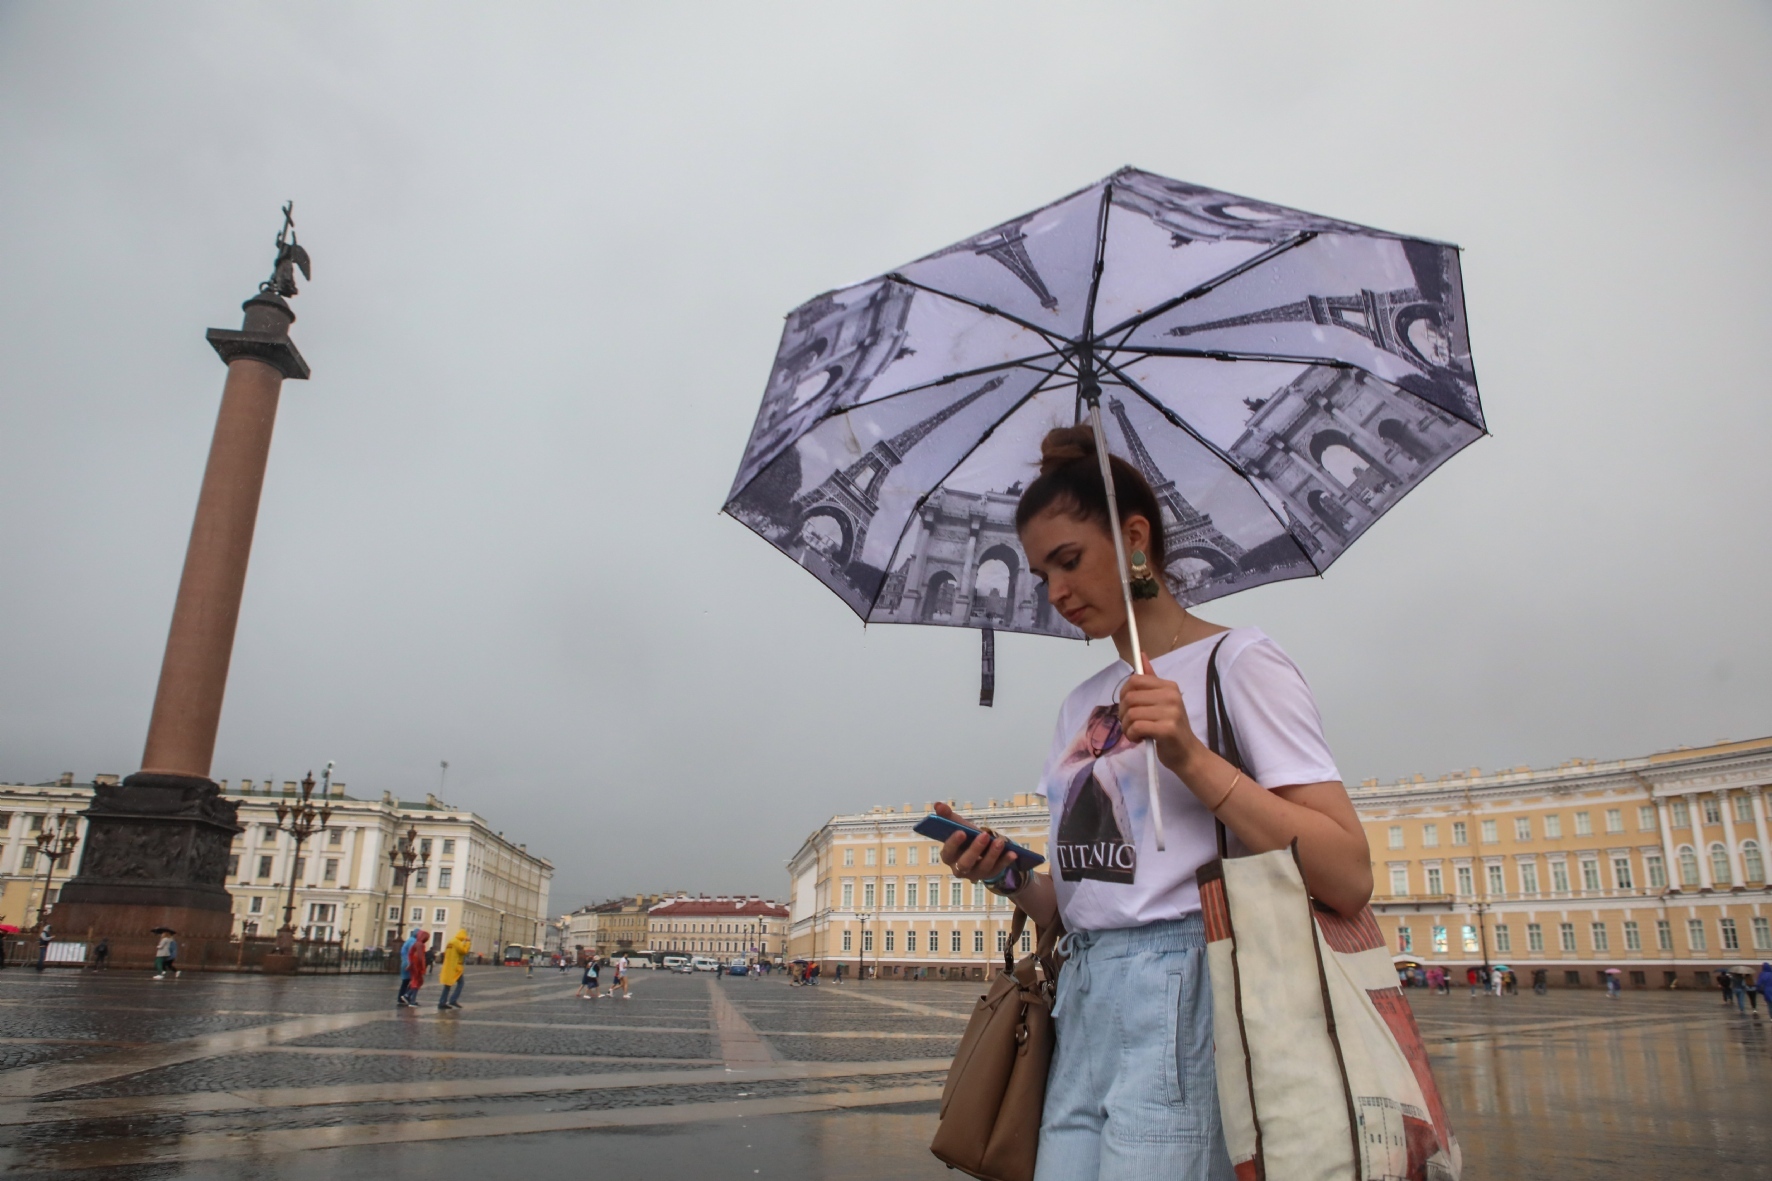 Питер сегодня погода видео. Летний дождь в Питере. Ветер Питер лето. Санкт-Петербург в дождливую погоду. Фотосессия Питер с зонтом.